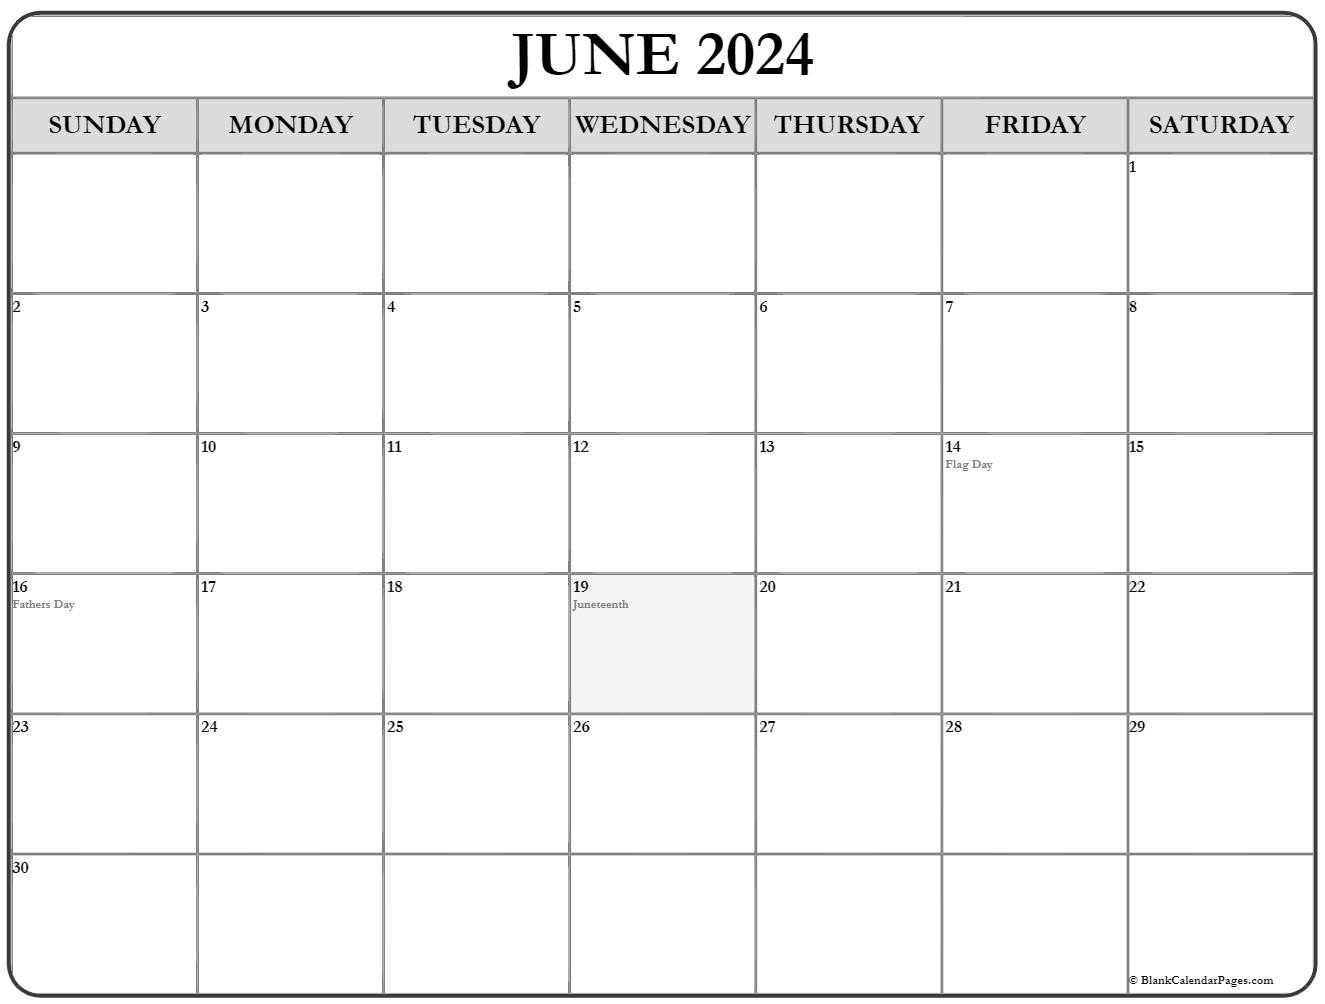 2023 Calendar 2023 Calendar Templates And Images Rubooksstream